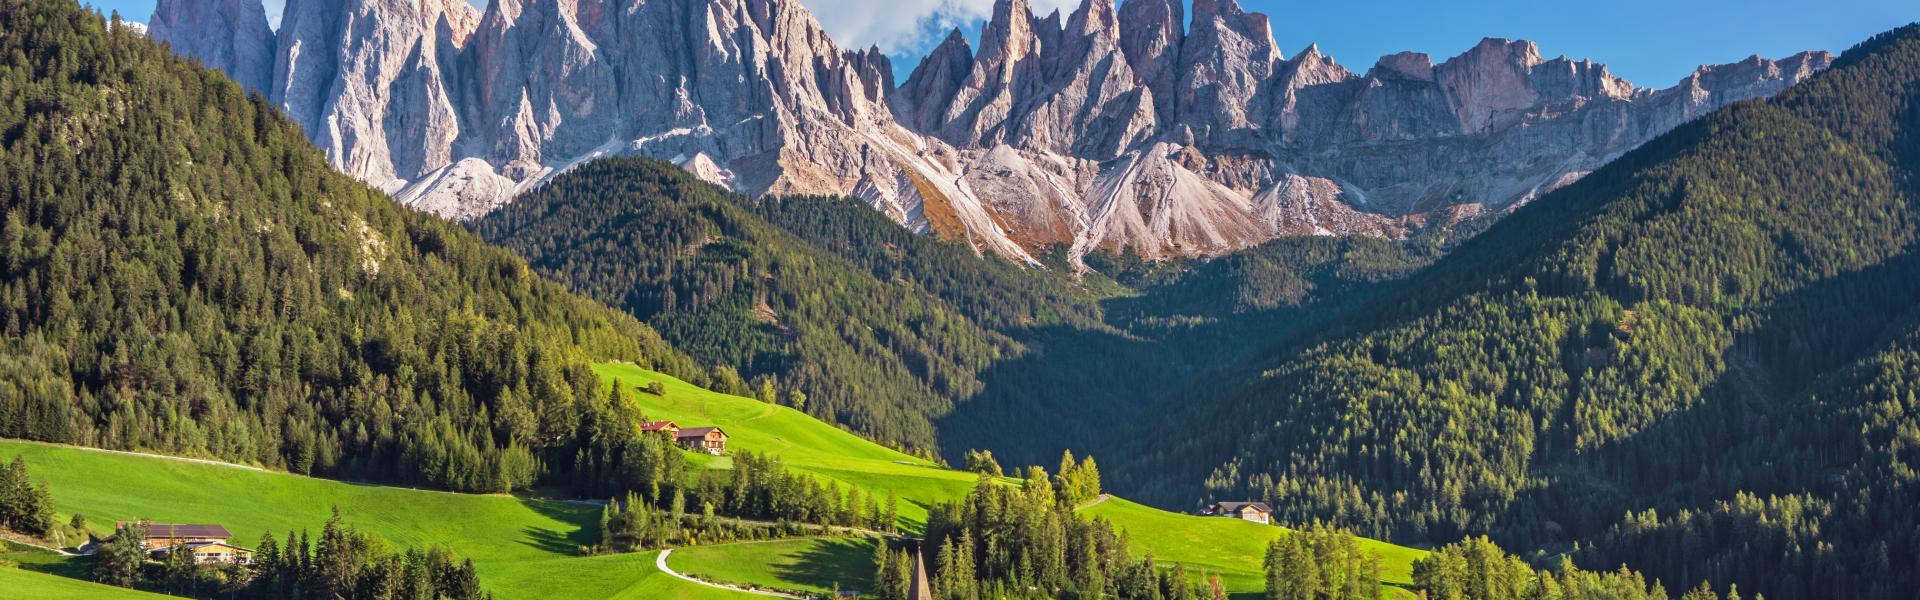 Ferienwohnungen & Ferienhäuser für Urlaub in Südtirol - Casamundo